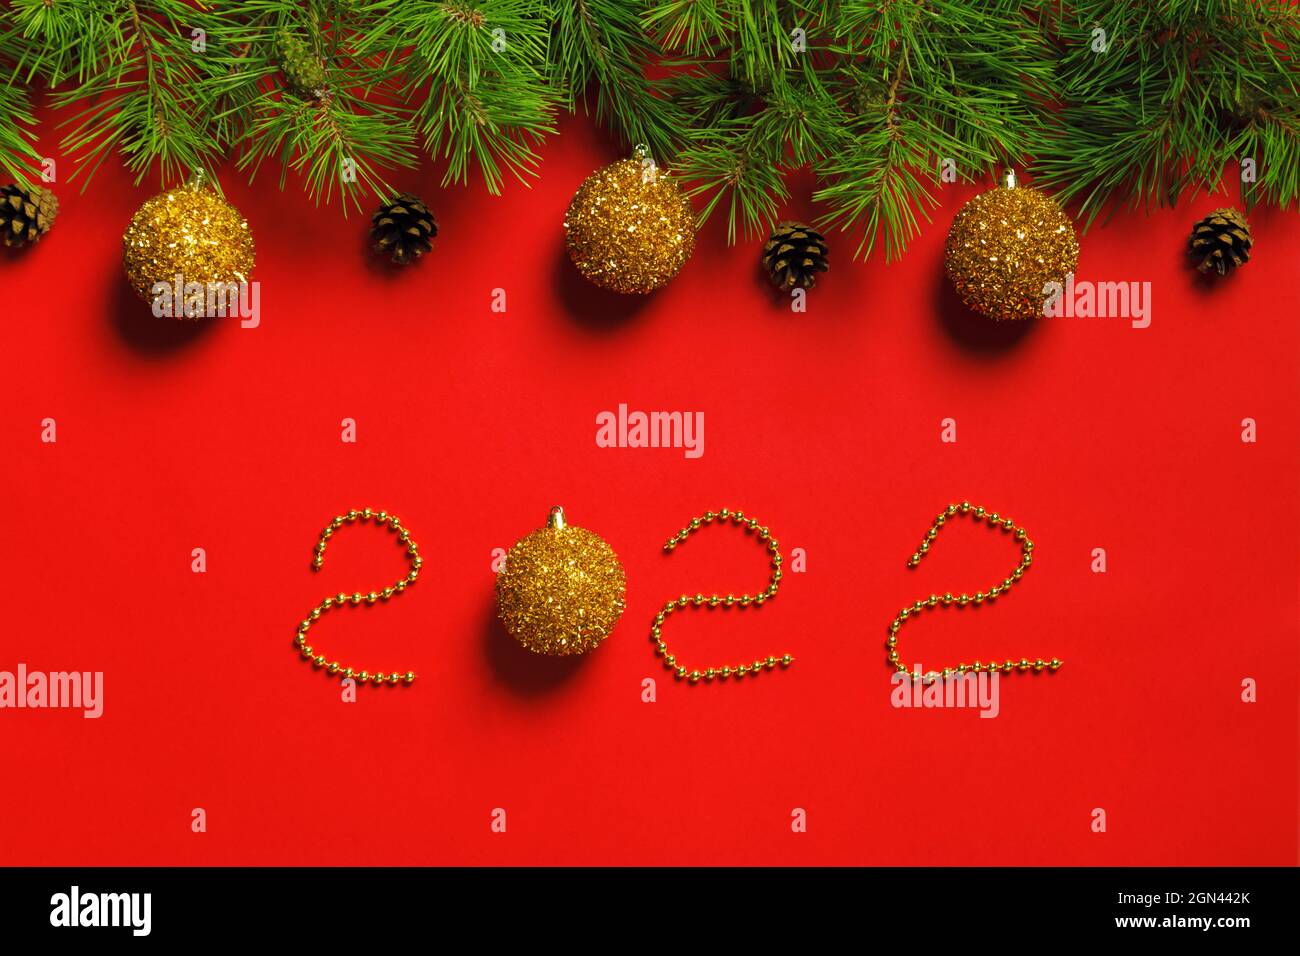 Bandera de Navidad hecha de ramas de abeto con conos en bolas sobre fondo rojo con la inscripción Año Nuevo 2022 Foto de stock